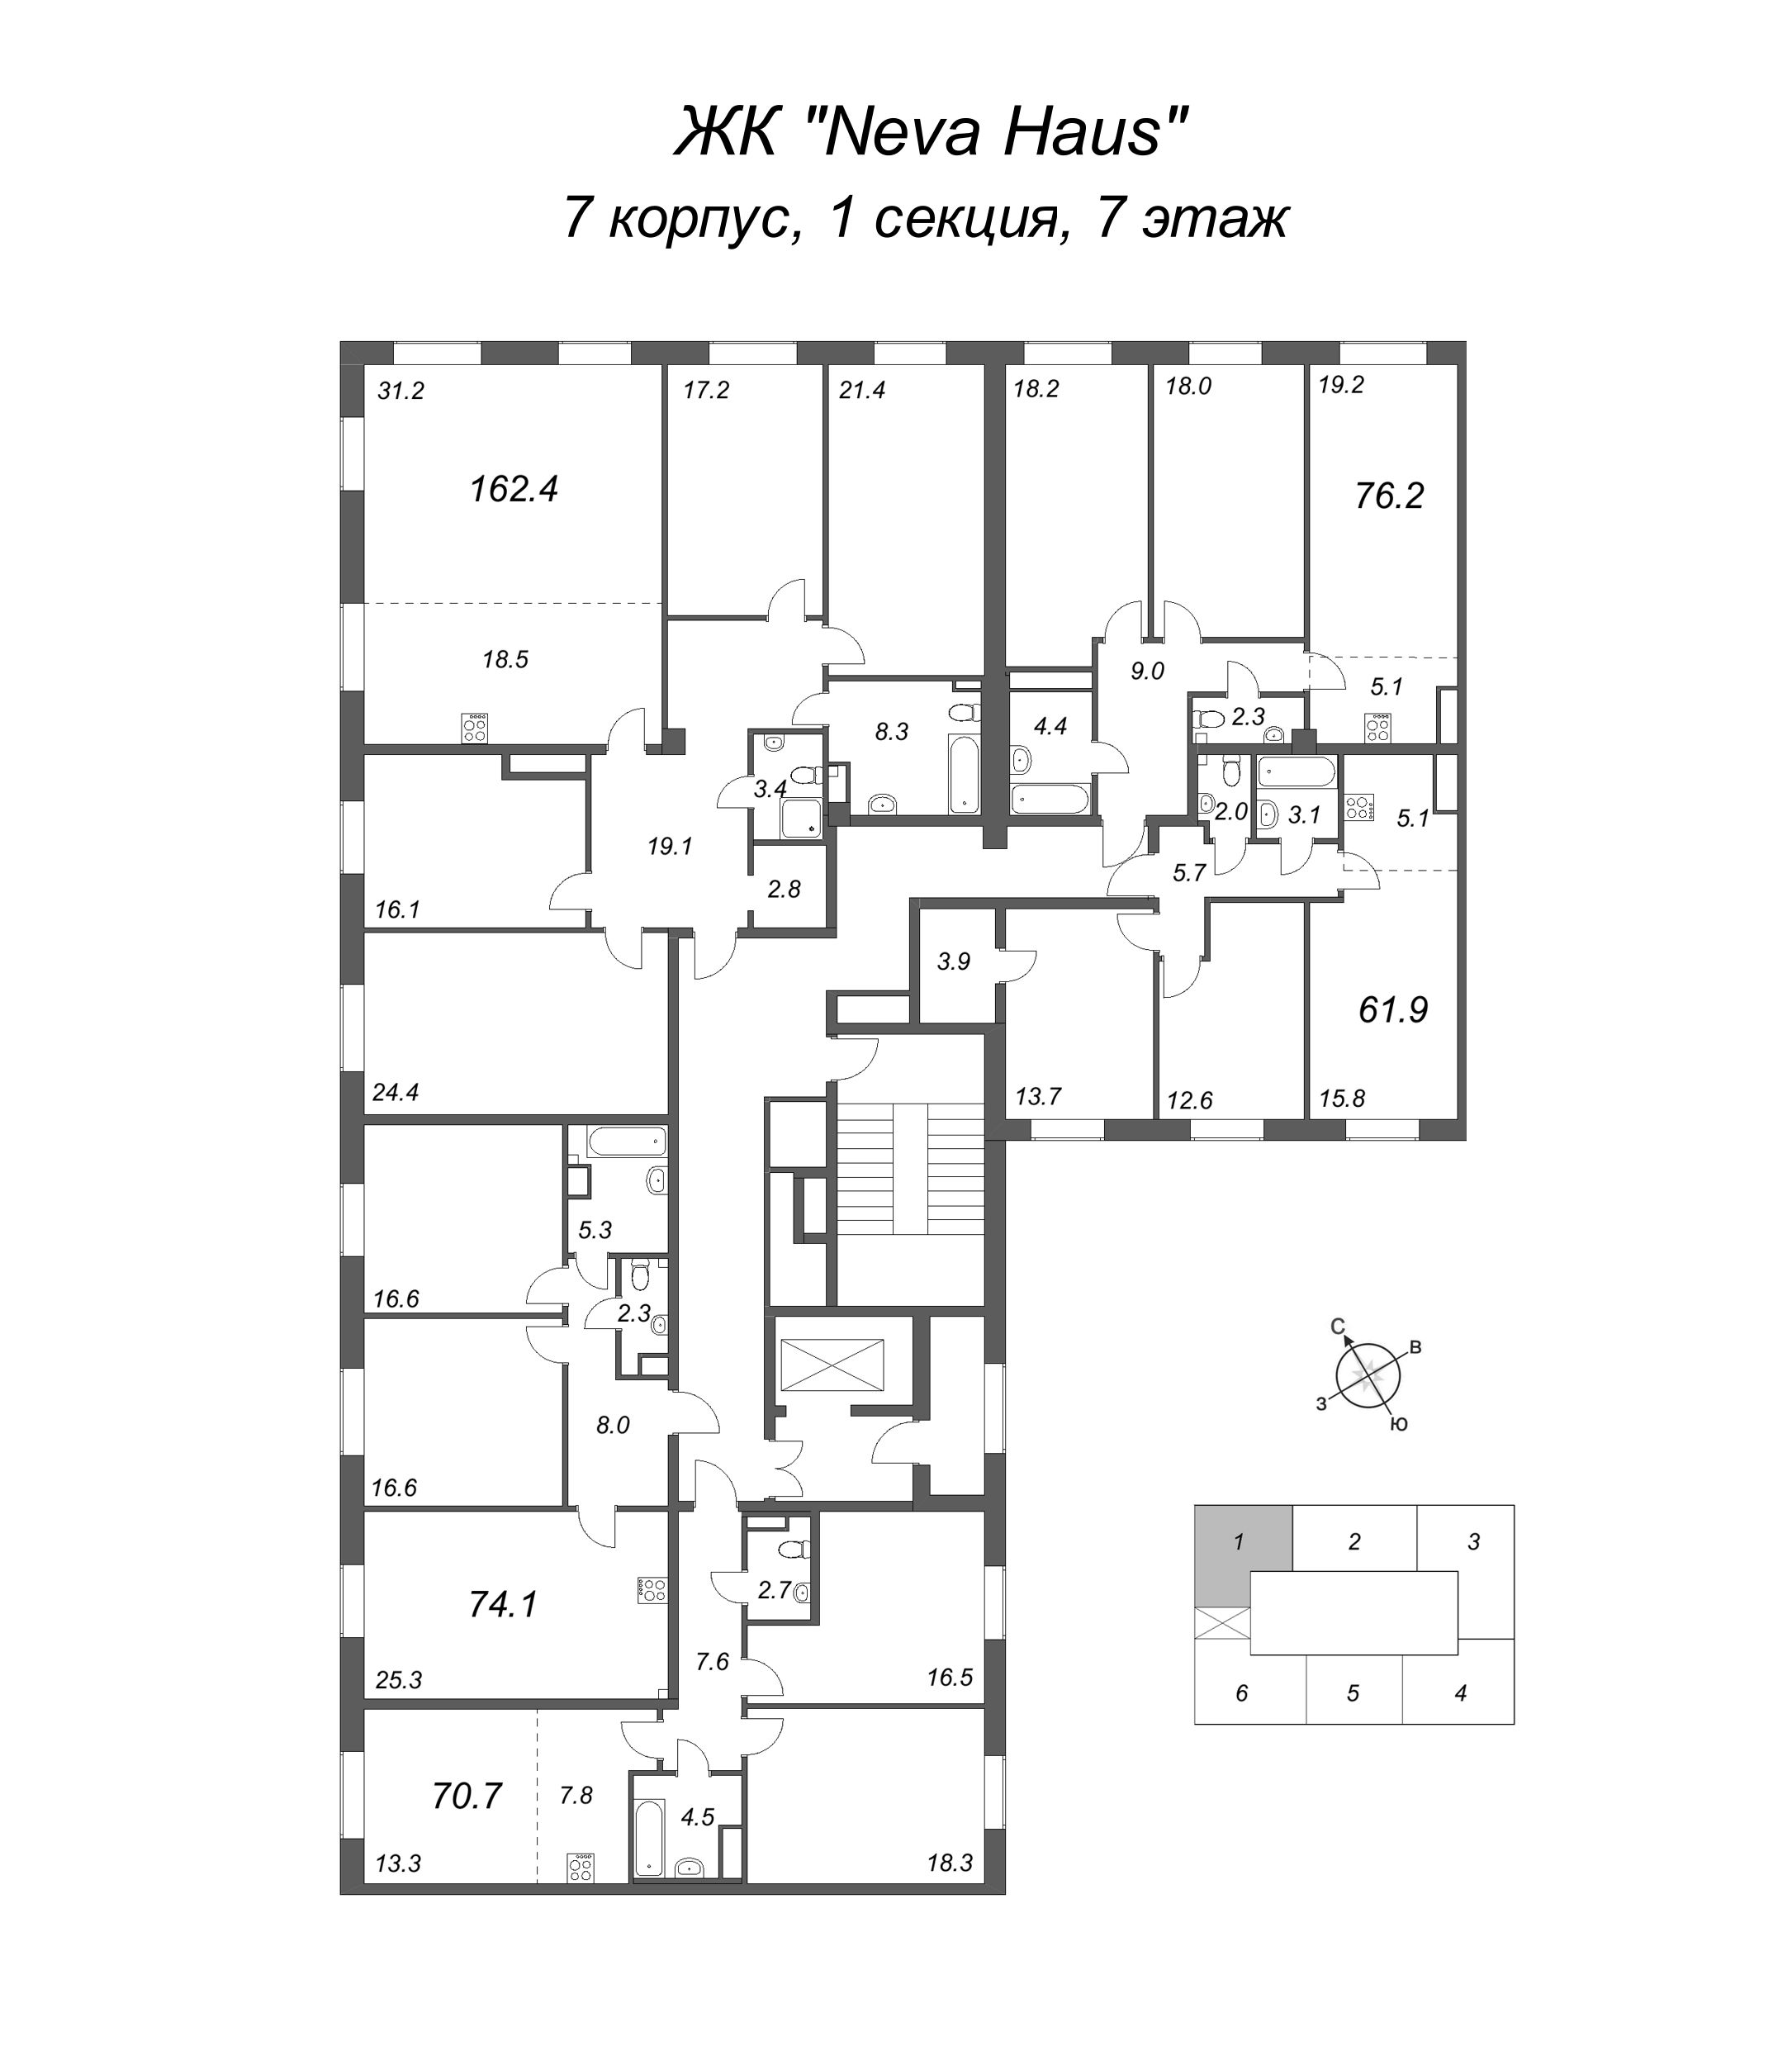 5-комнатная (Евро) квартира, 163.2 м² в ЖК "Neva Haus" - планировка этажа